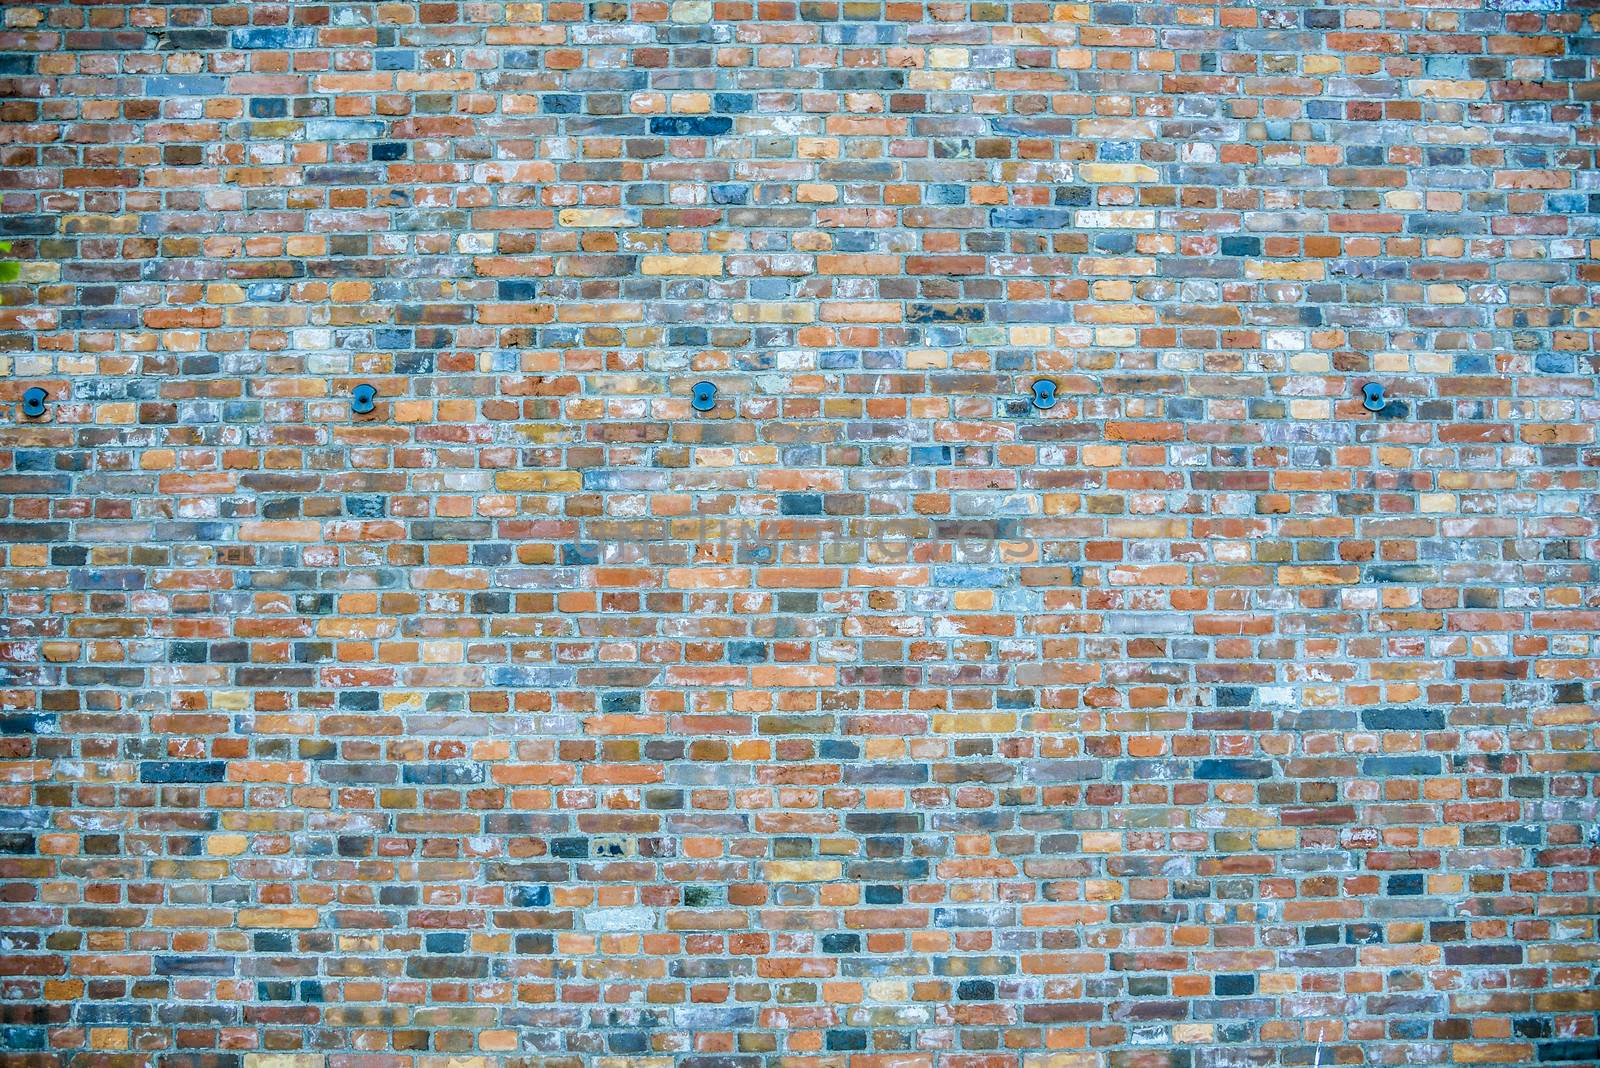 Brick wall pattern2 by gjeerawut